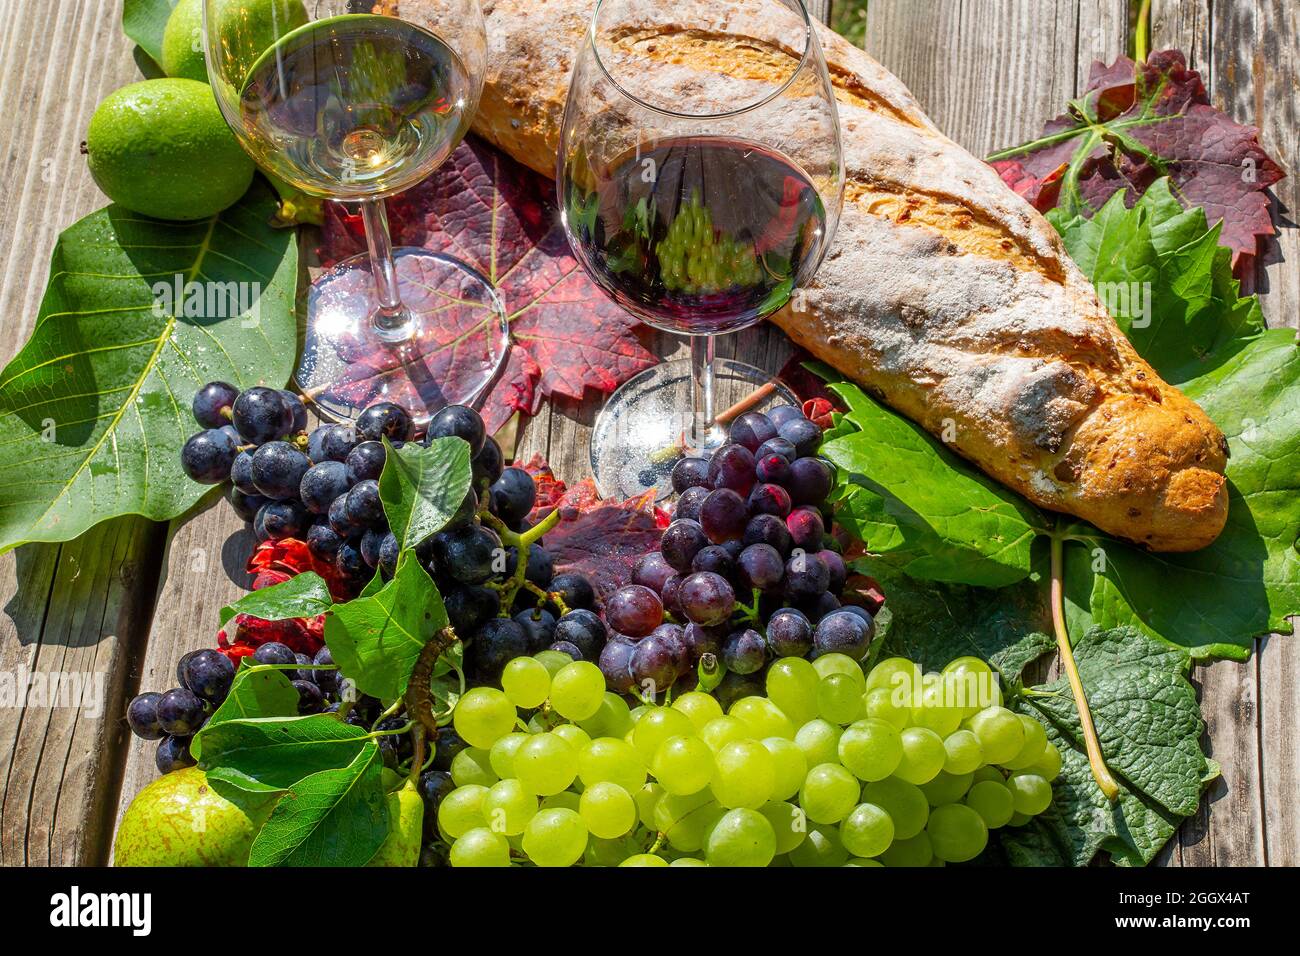 Symbolbild Weinlese: Reife Weintrauben mit Weingläsern dekoriert auf einem Holztisch Foto de stock